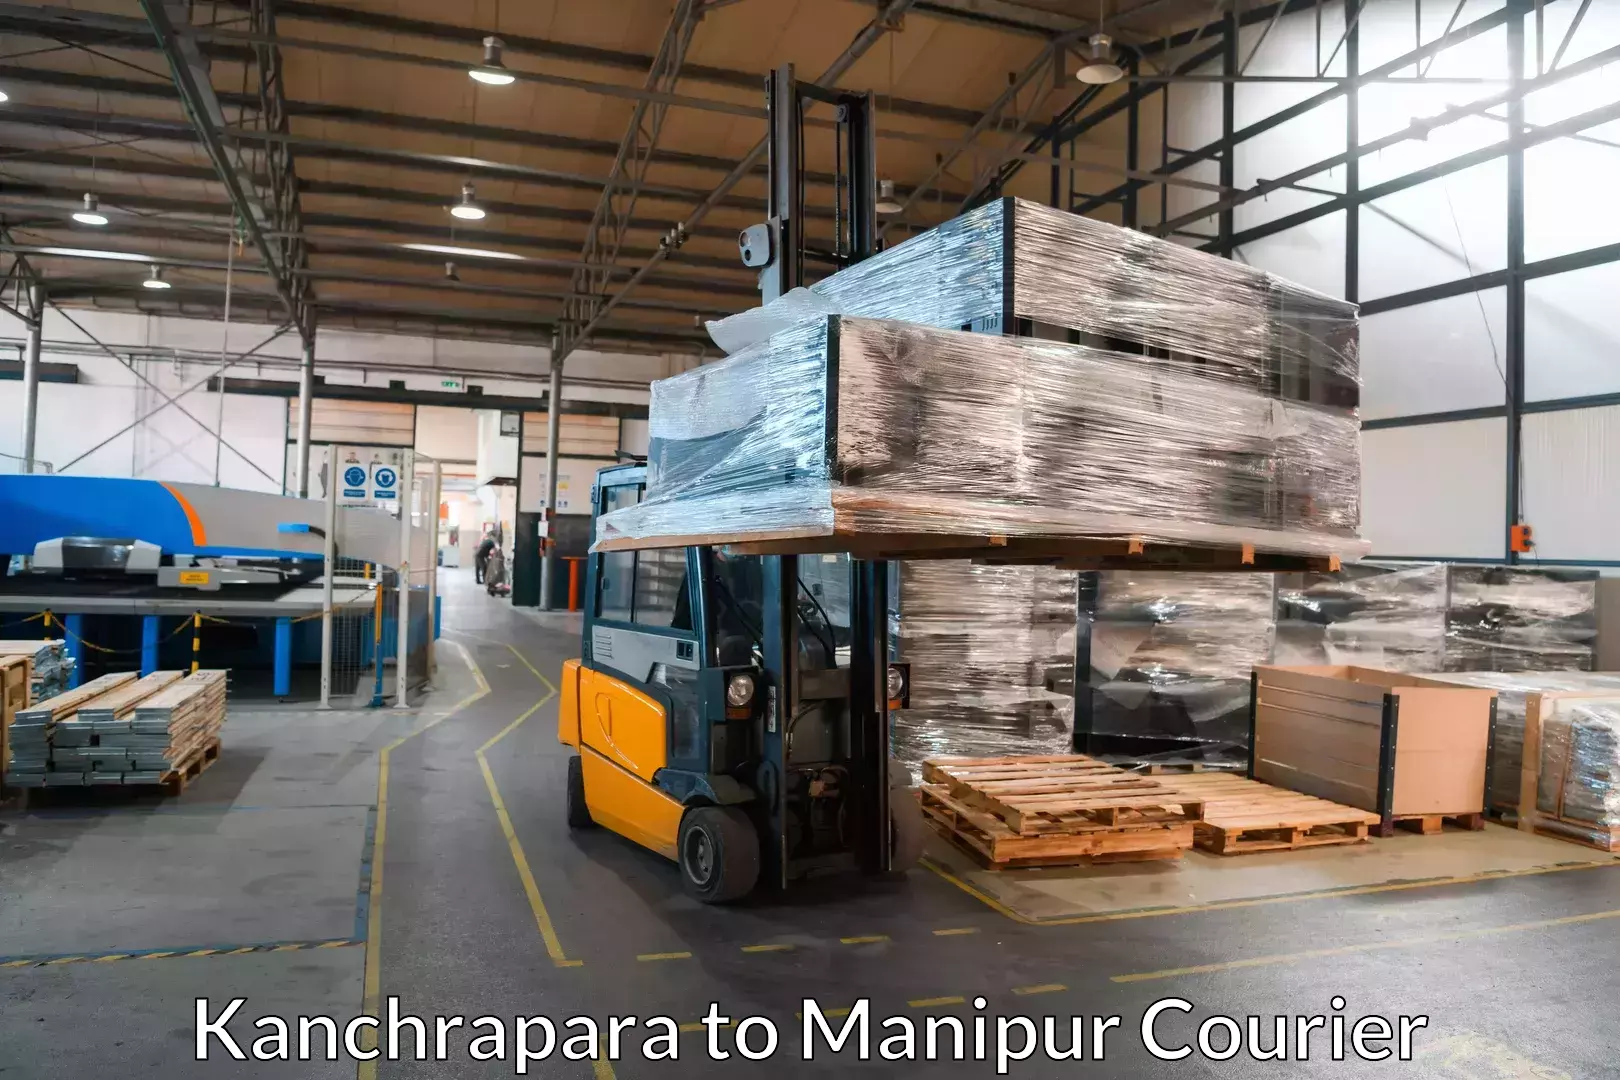 Professional furniture movers Kanchrapara to Kakching